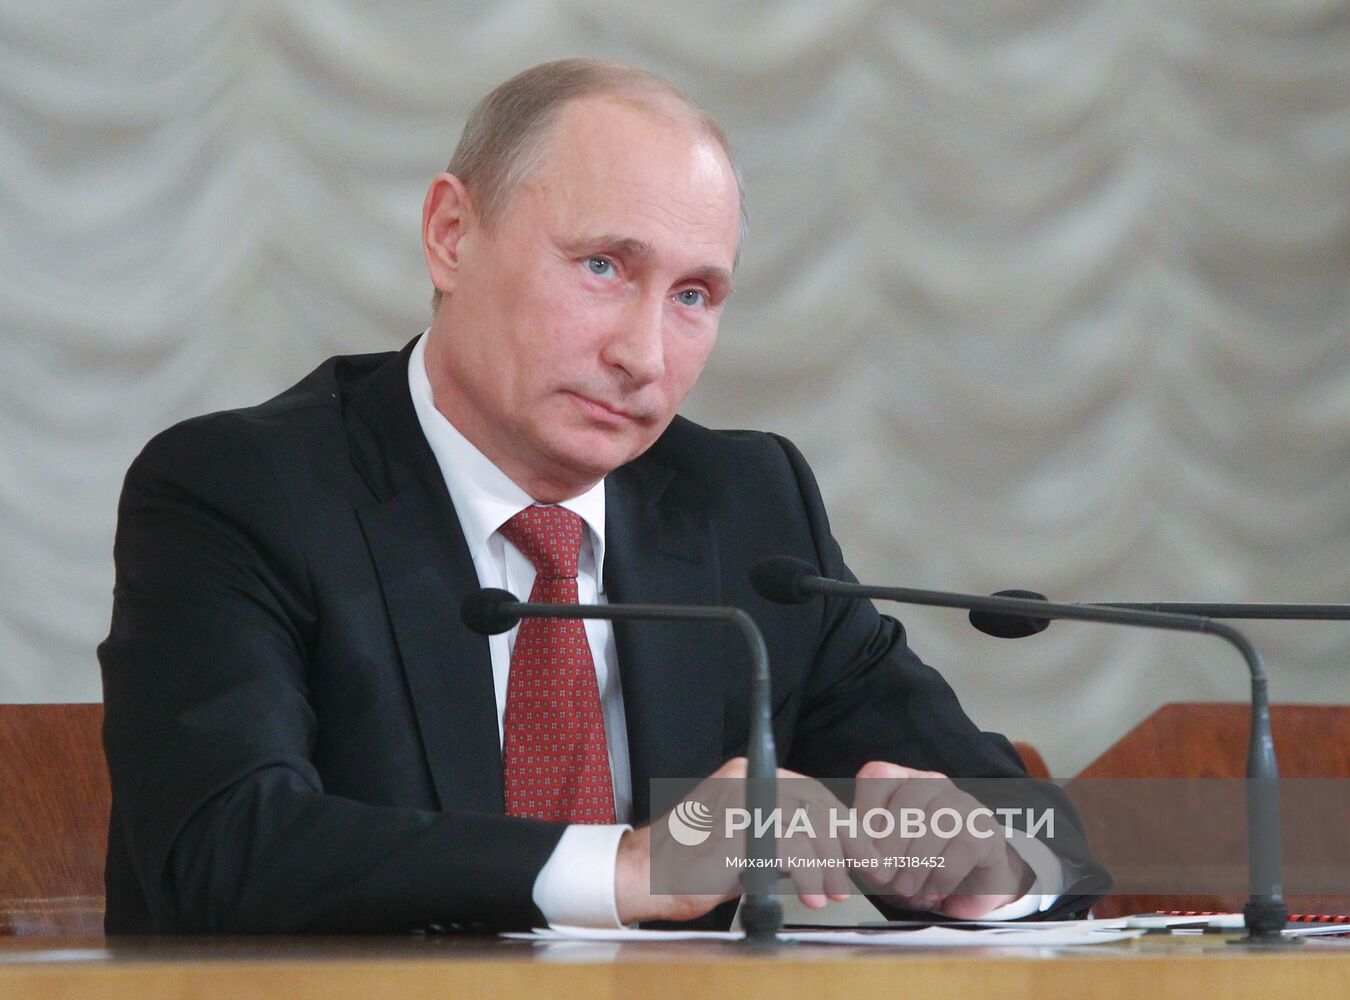 Владимир Путин на VIII Всероссийском съезде судей в Москве